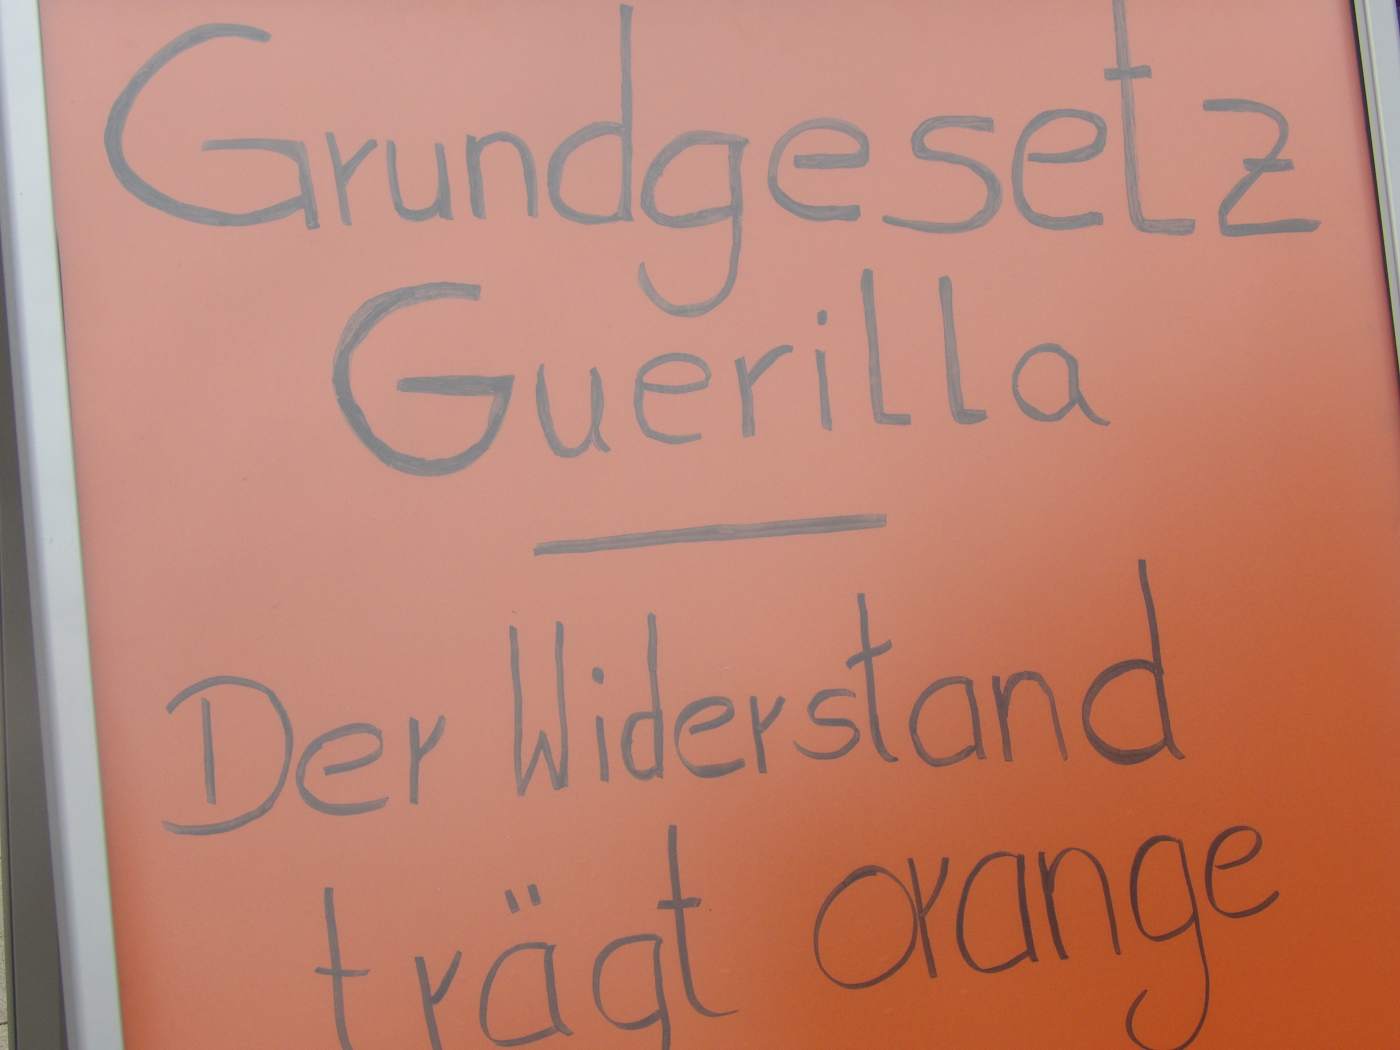 Grundgesetz-Guerilla Rauenberg am 22.11.2020